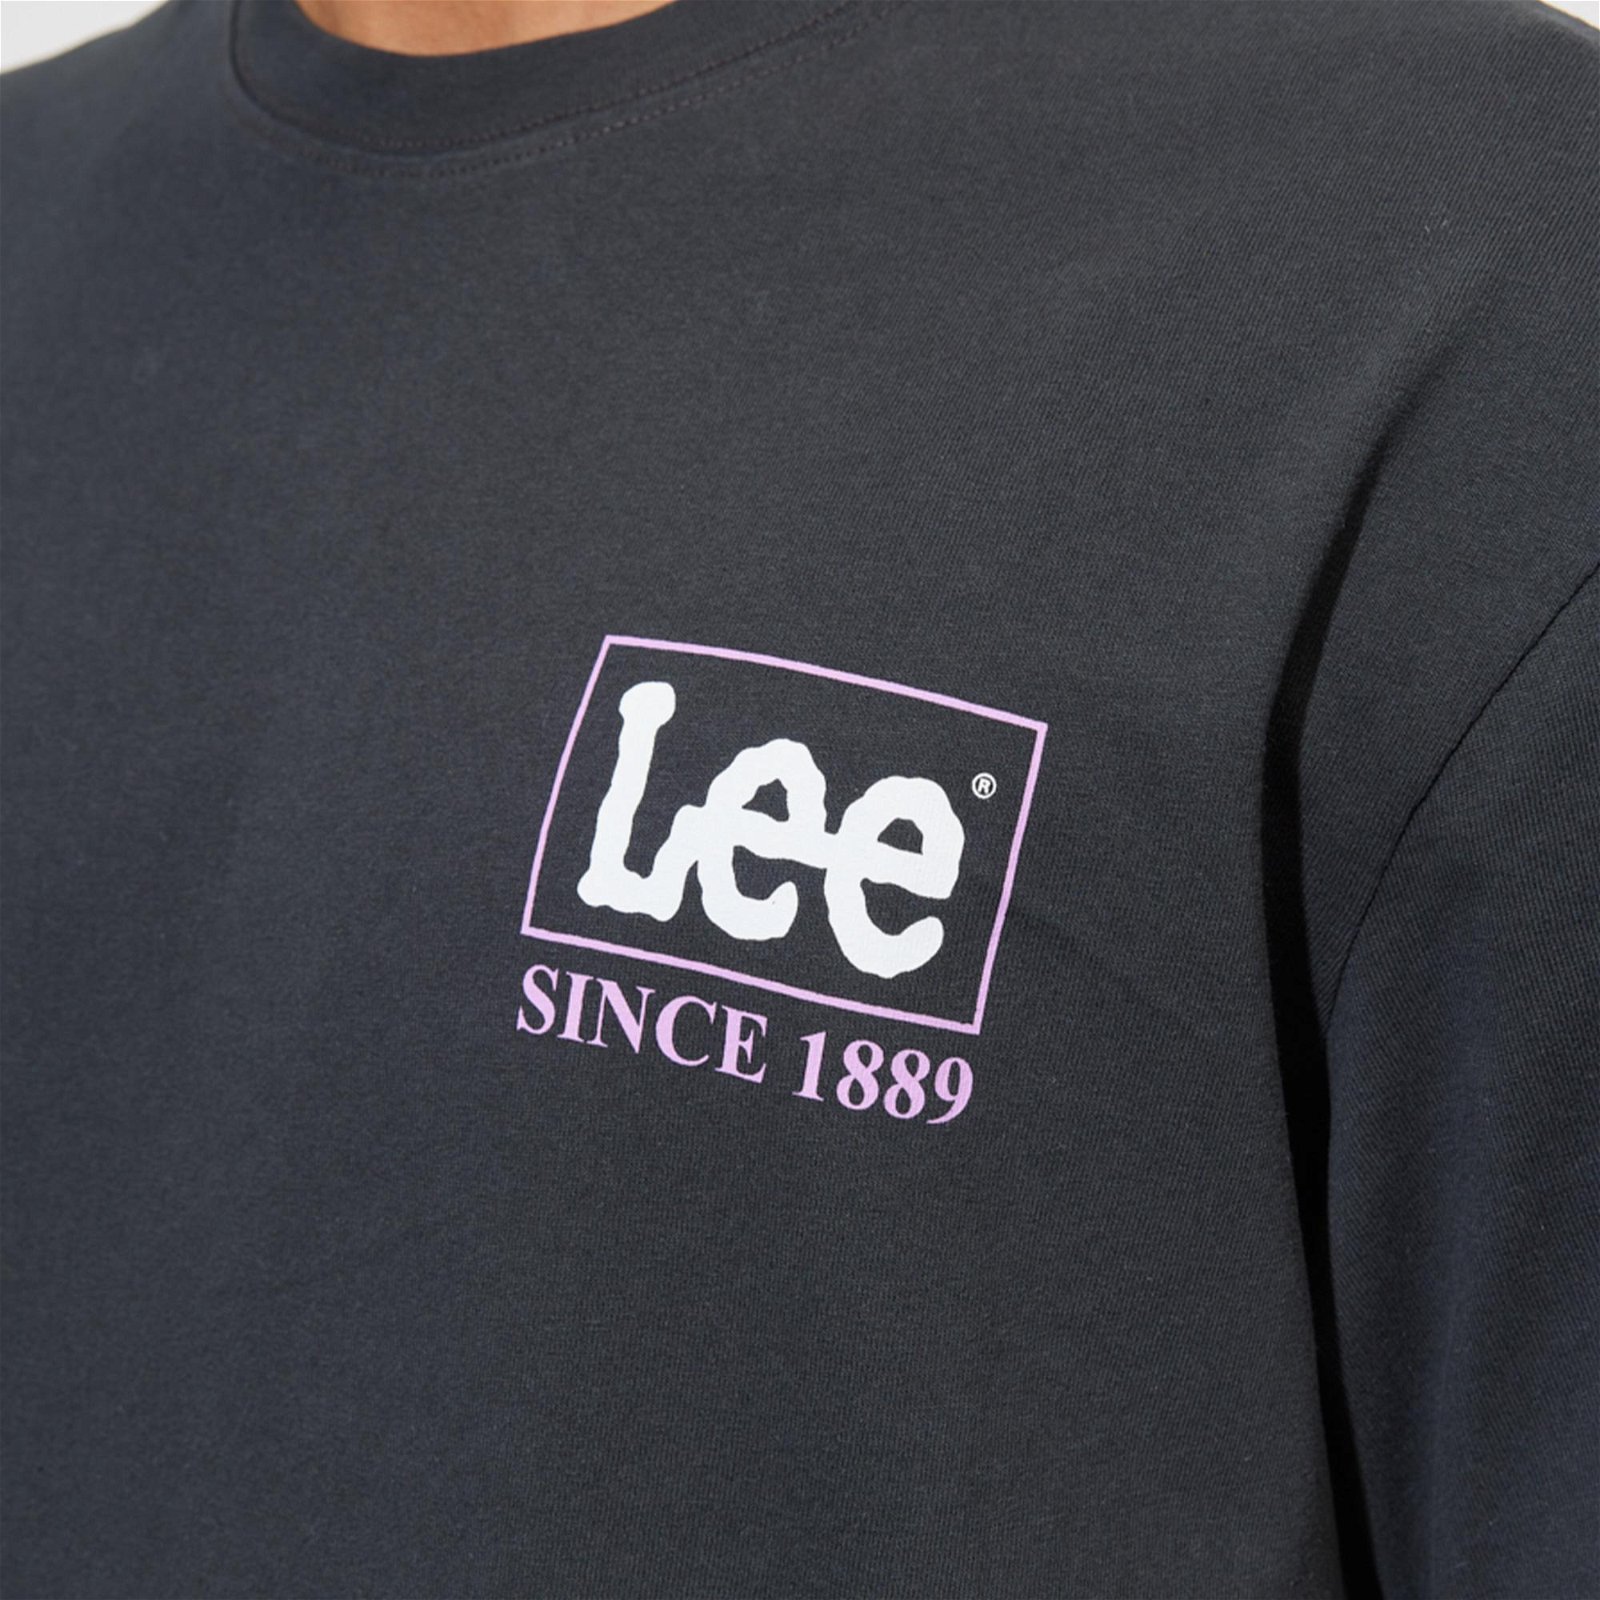 Lee Erkek Siyah T-Shirt